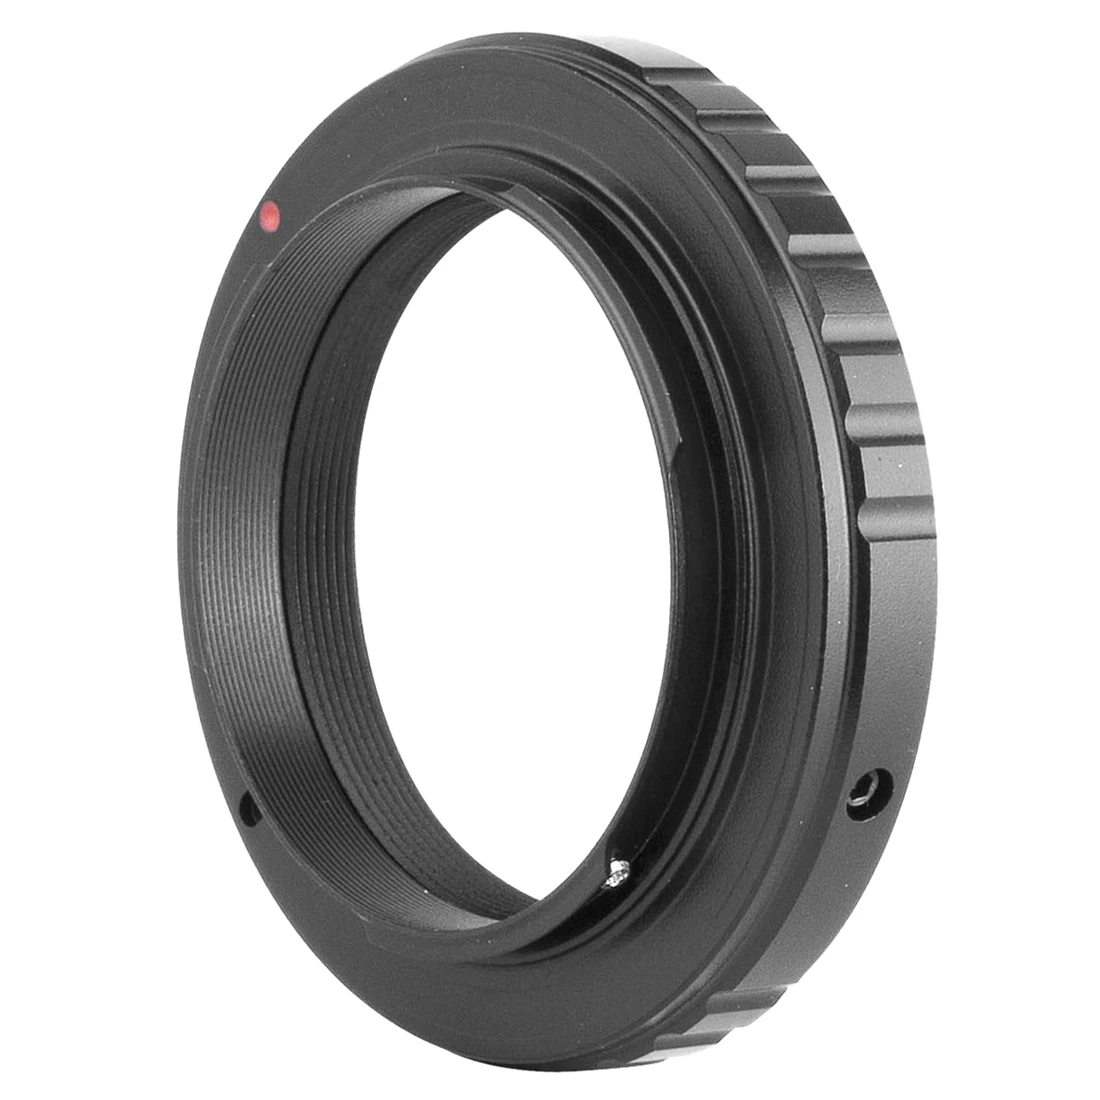 Adapter Til T2 Objektiv til Nikon F-Mount-Kamera kan monteres Krop D50 D70 D80, D90 D600 D5100 D3 D300S D7000 Sort